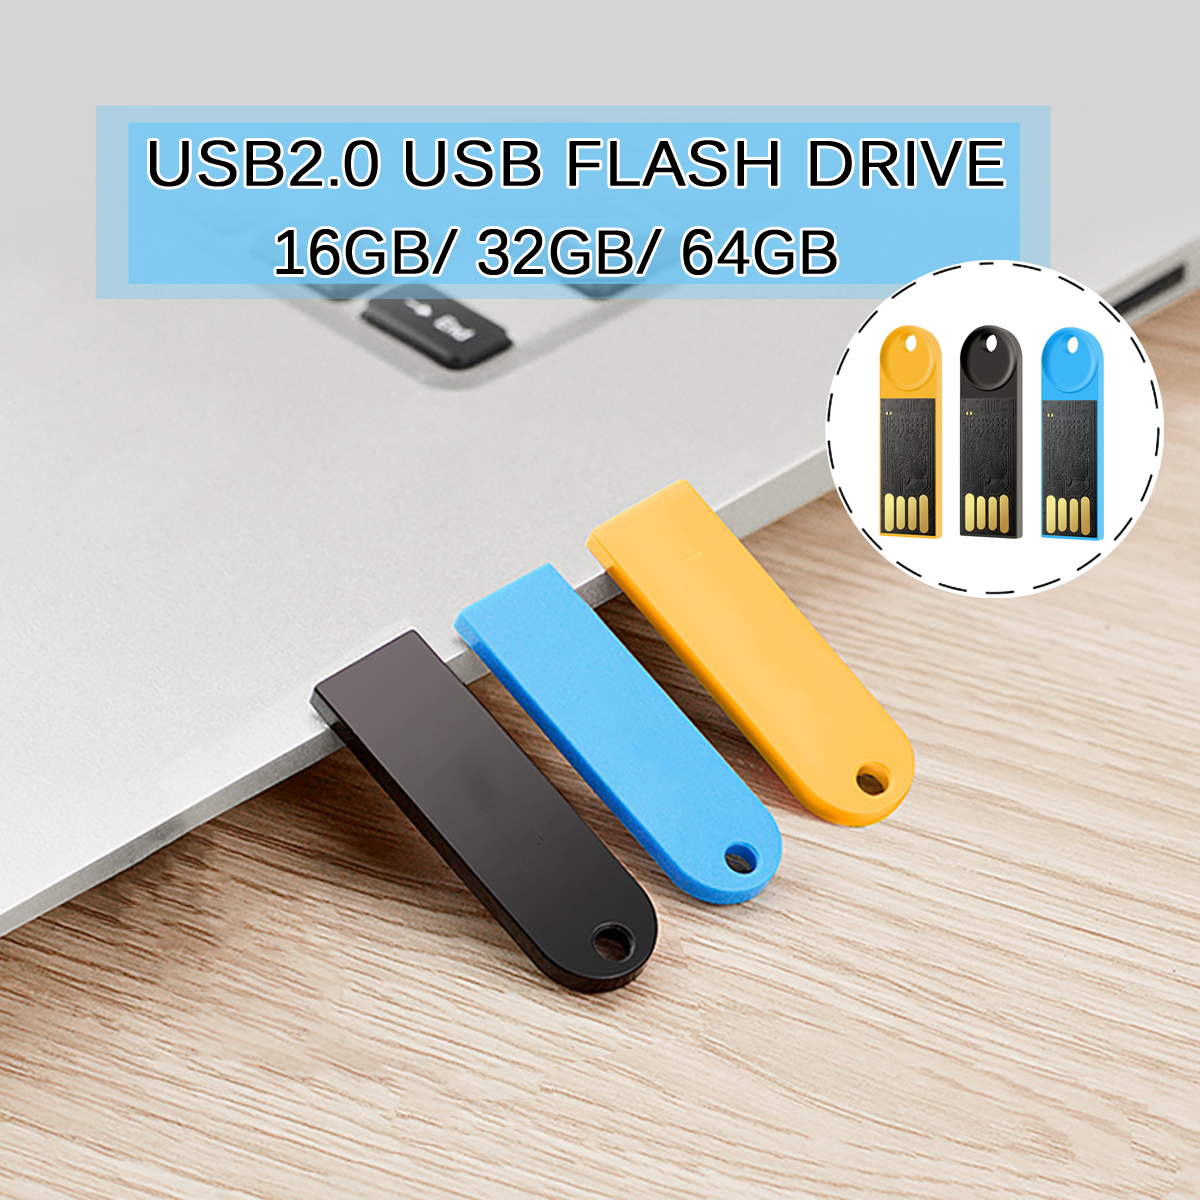 Kodak-K212-USB20-Small-USB-Flash-Drive-16GB-32GB-64GB-Memory-Stick-U-Disk-Pen-Drive-ABS-Colorful-Por-1566541-5